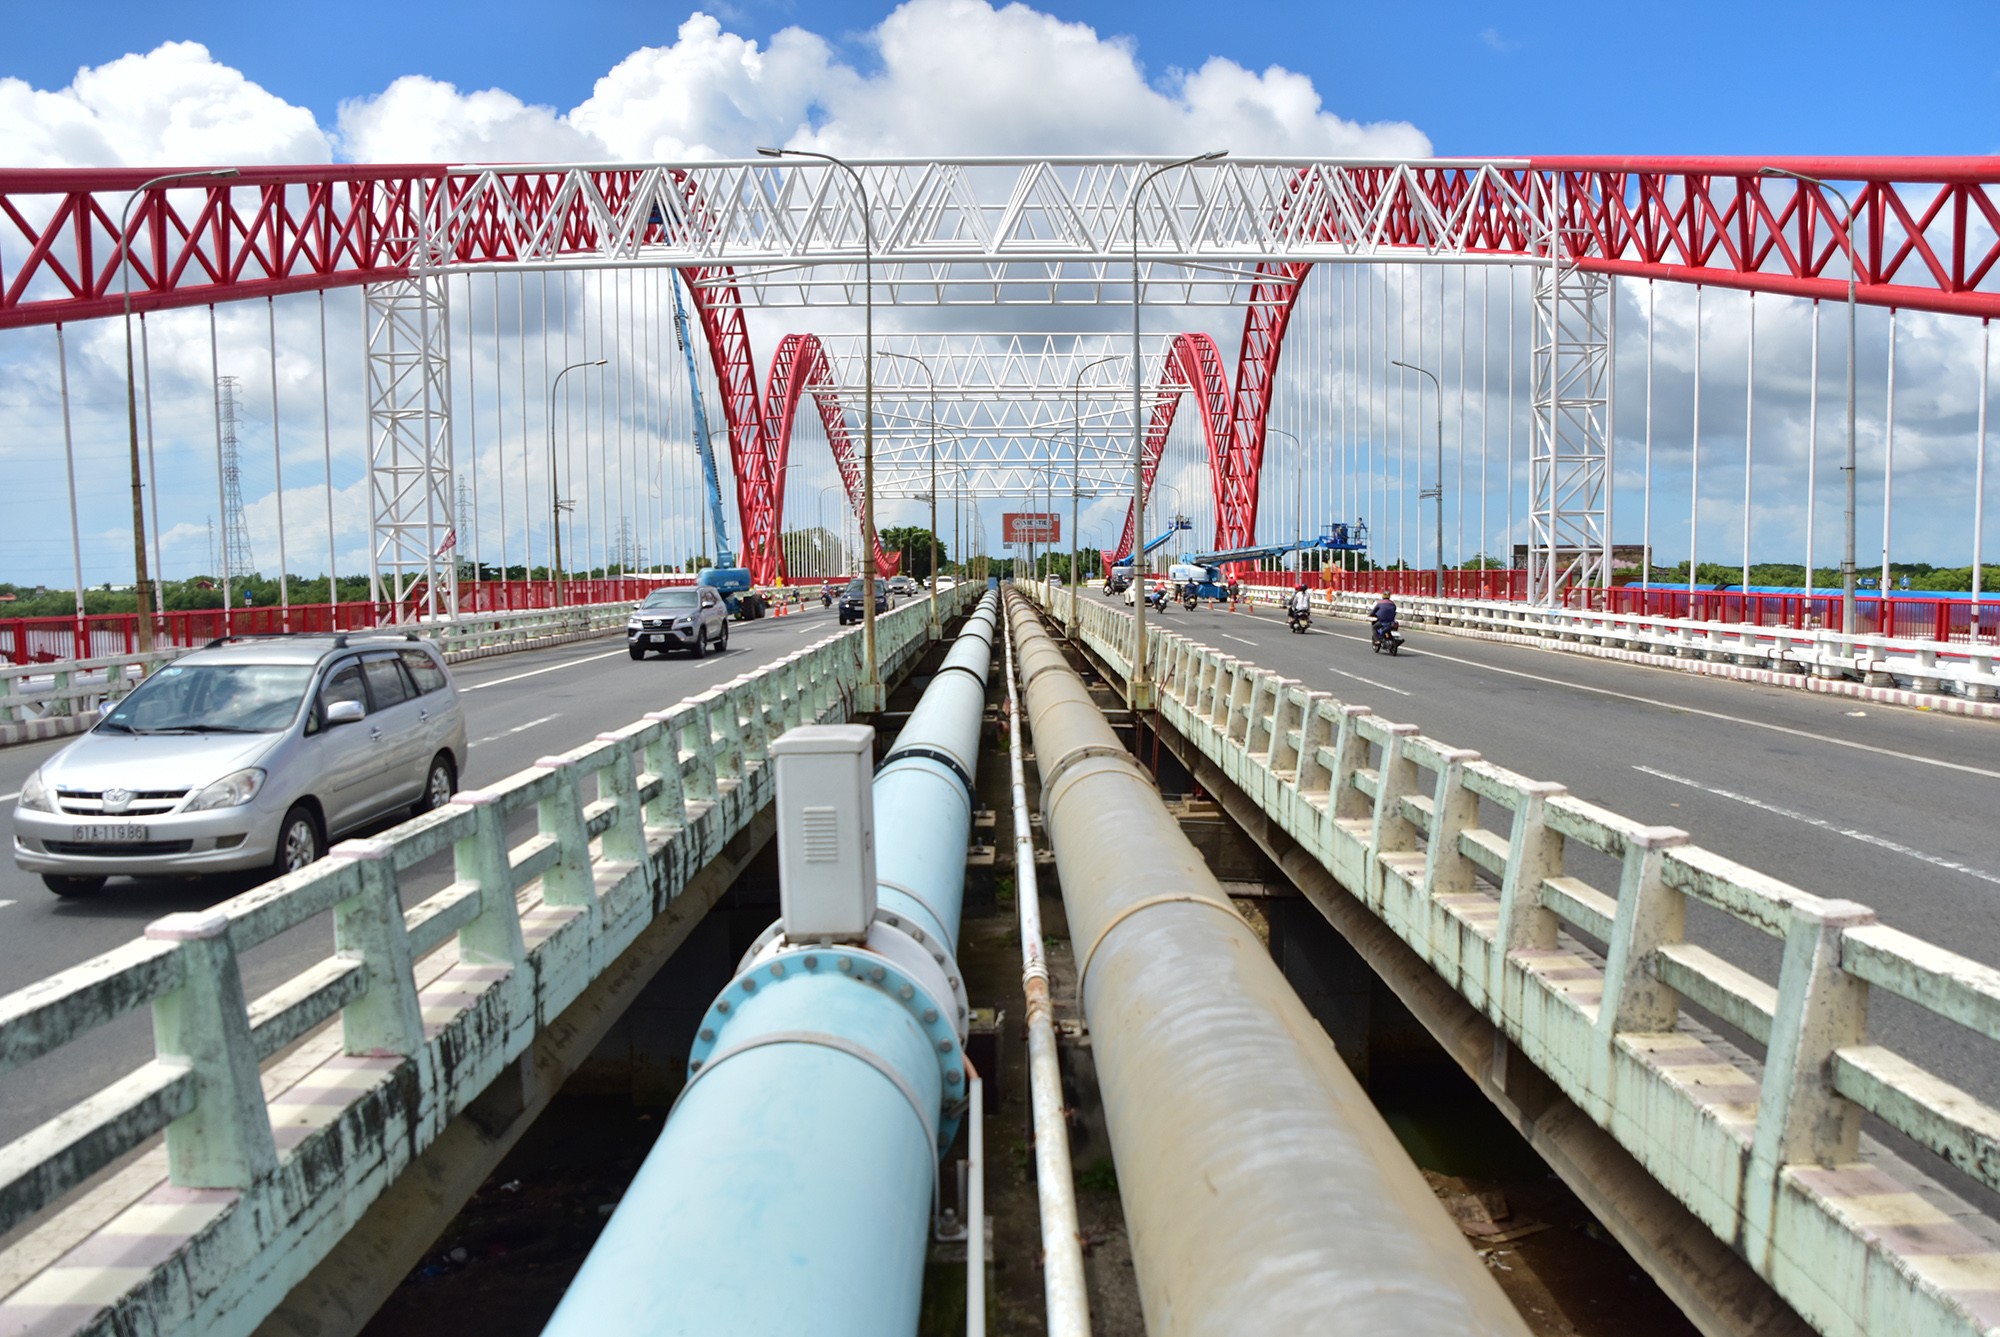 Cầu Cỏ May bắc qua sông Cỏ May, nằm trên quốc lộ 51, cửa ngõ chính vào TP Vũng Tàu. Cầu có chiều dài 258m, rộng 30m, gồm 2 làn đường ngược chiều được ngăn cách bởi lan can và hai ống dẫn nước ngọt.